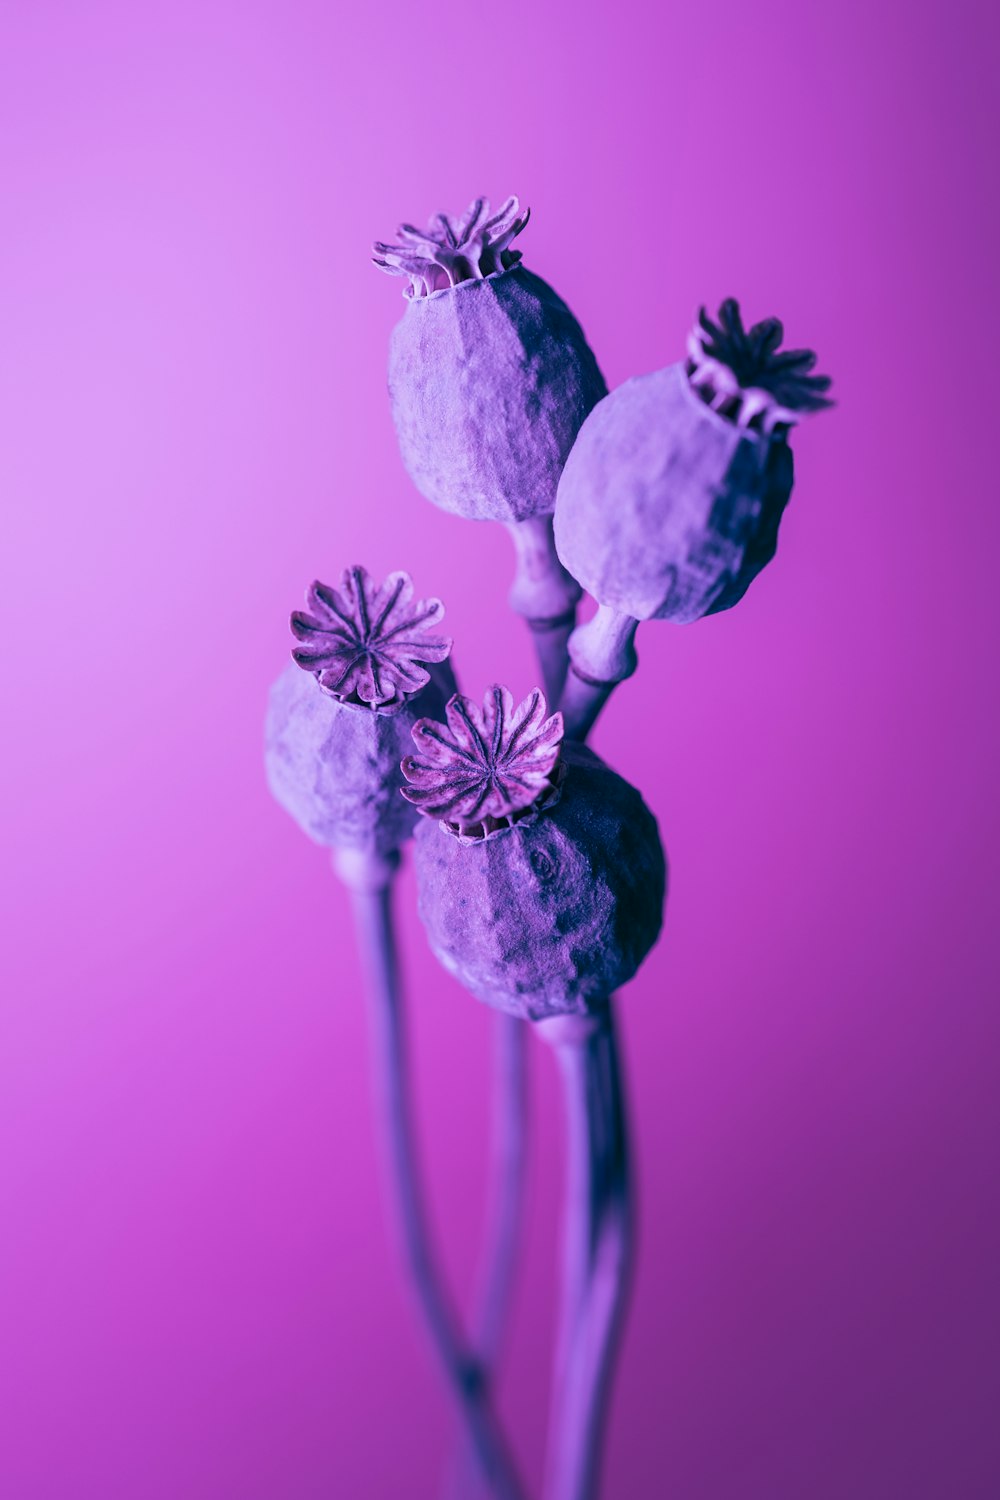 Hoa tím là một trong những loài hoa đẹp nhất trong tự nhiên với màu sắc rực rỡ và hương thơm quyến rũ. Nếu bạn là người yêu thích hoa, hãy xem ngay hình ảnh liên quan đến hoa tím để thưởng thức vẻ đẹp tuyệt vời của chúng.